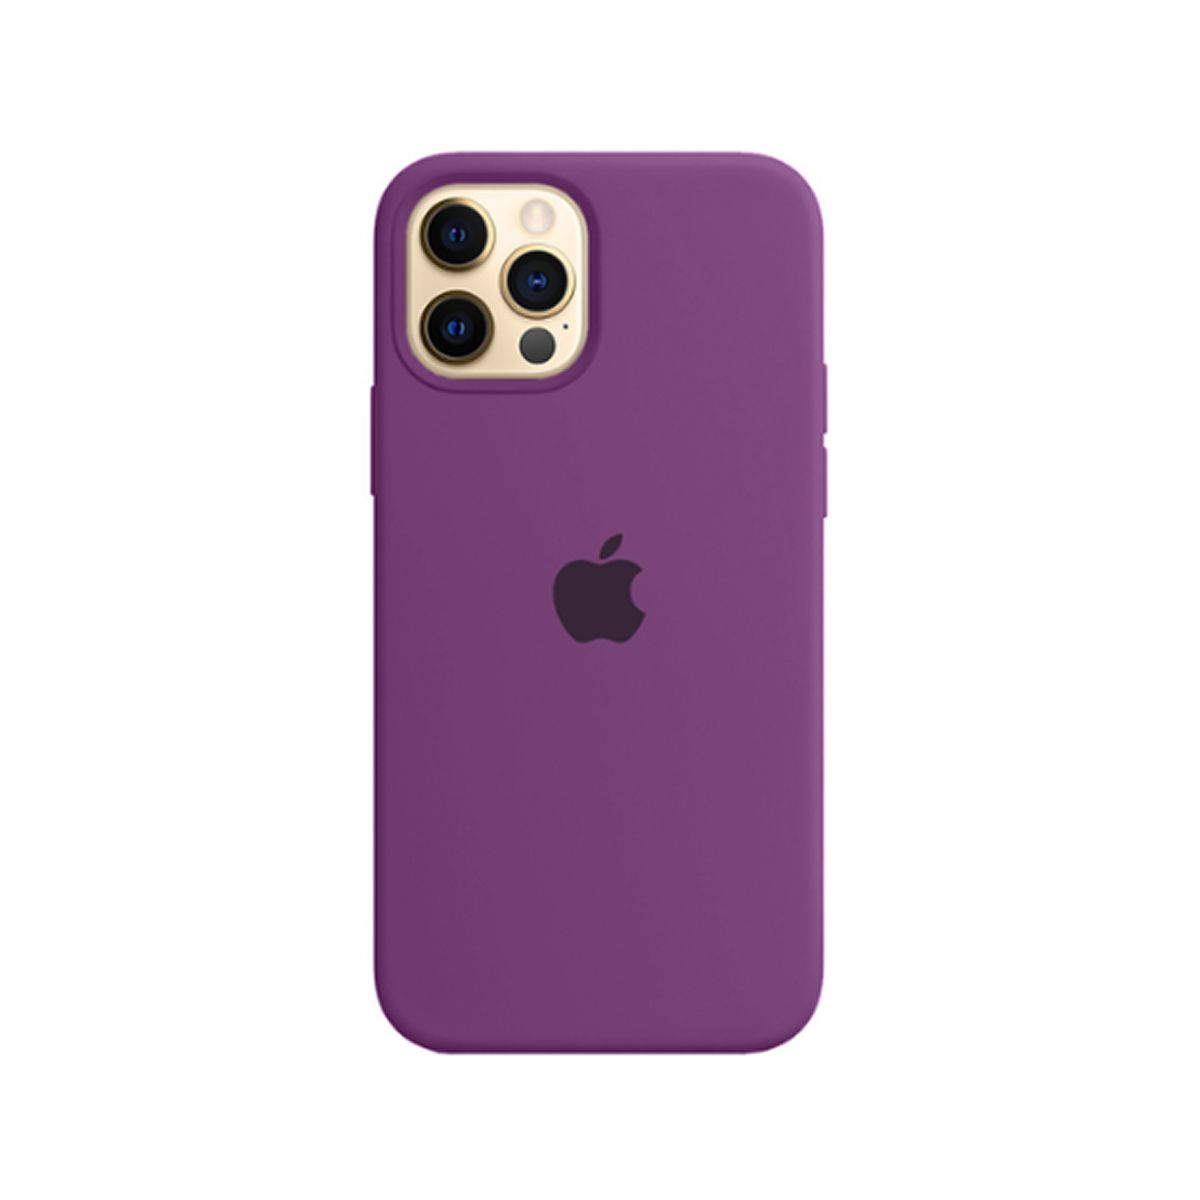 Apple Funda de Silicona iPhone 12 Pro Max - Rosa Citrico (Pink